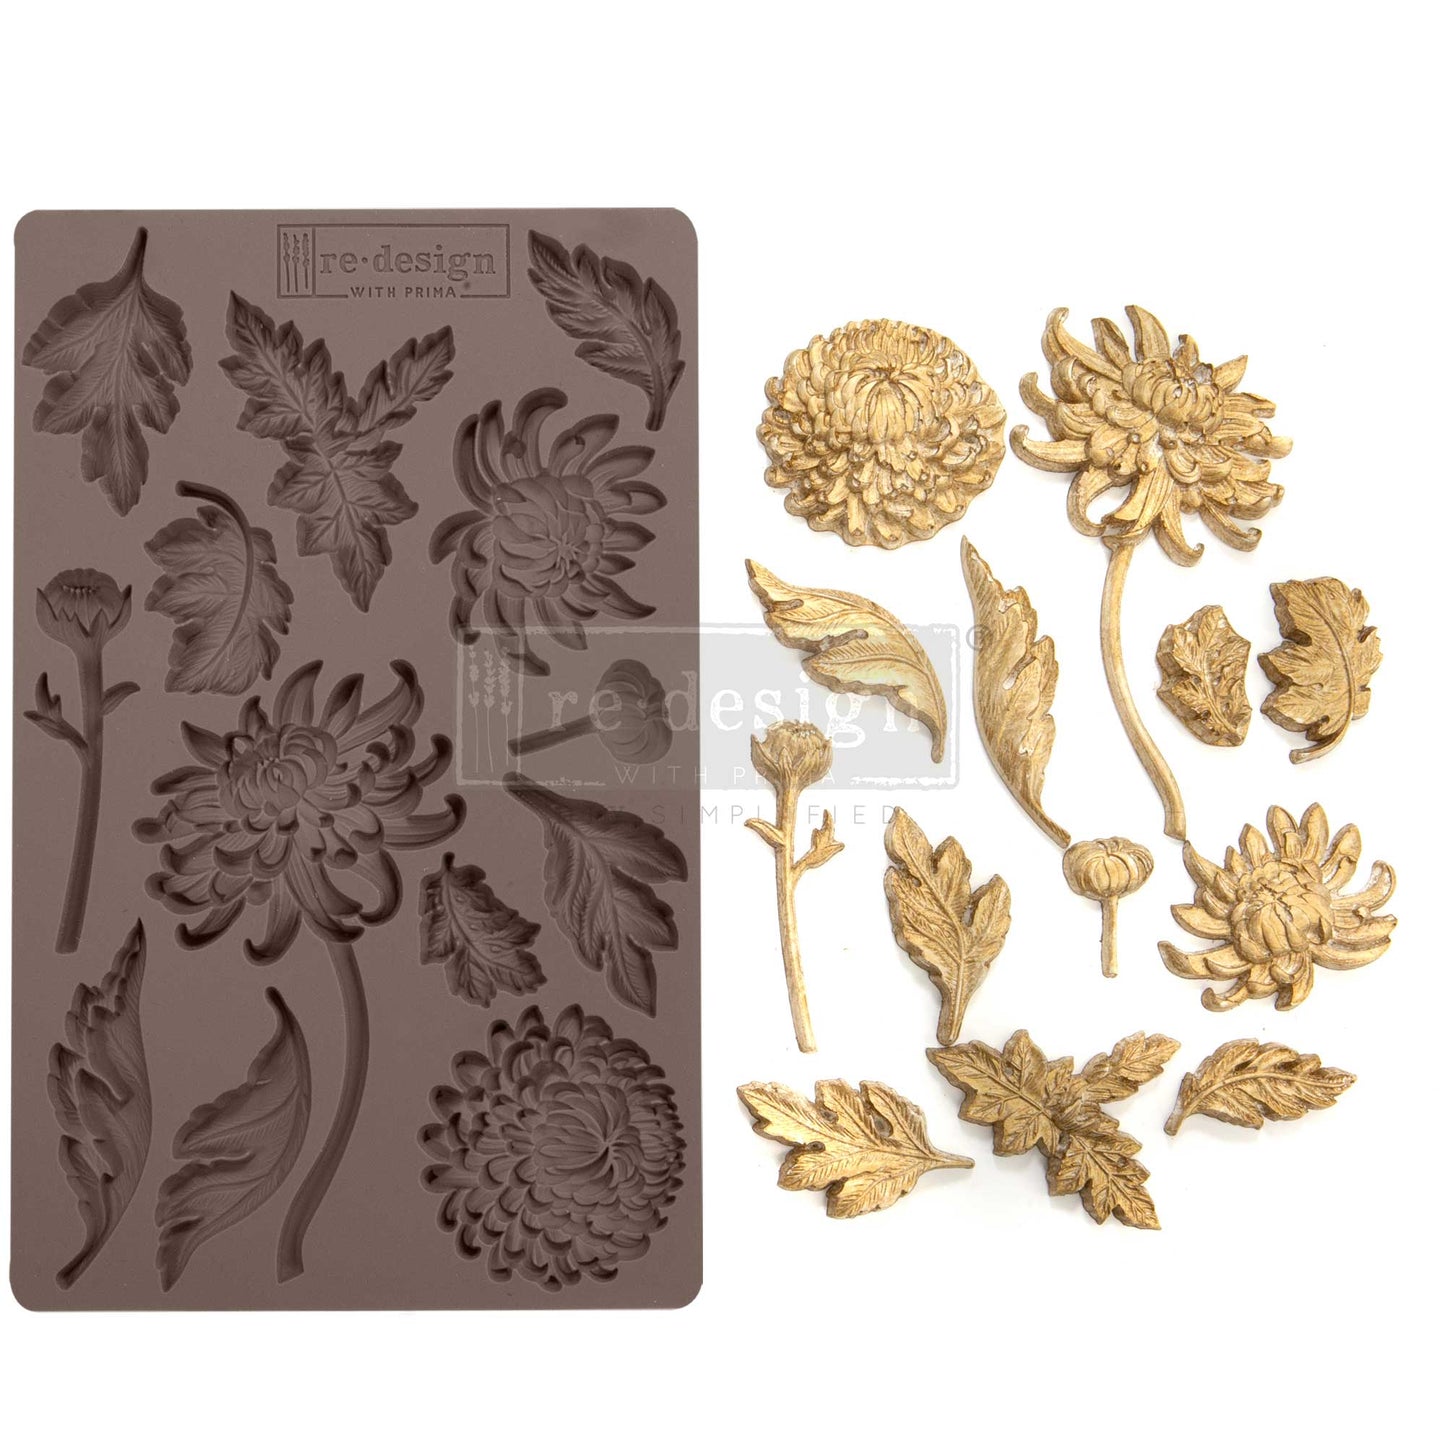 Silikonformen | Redesign - Decor Mould - Botanist Floral